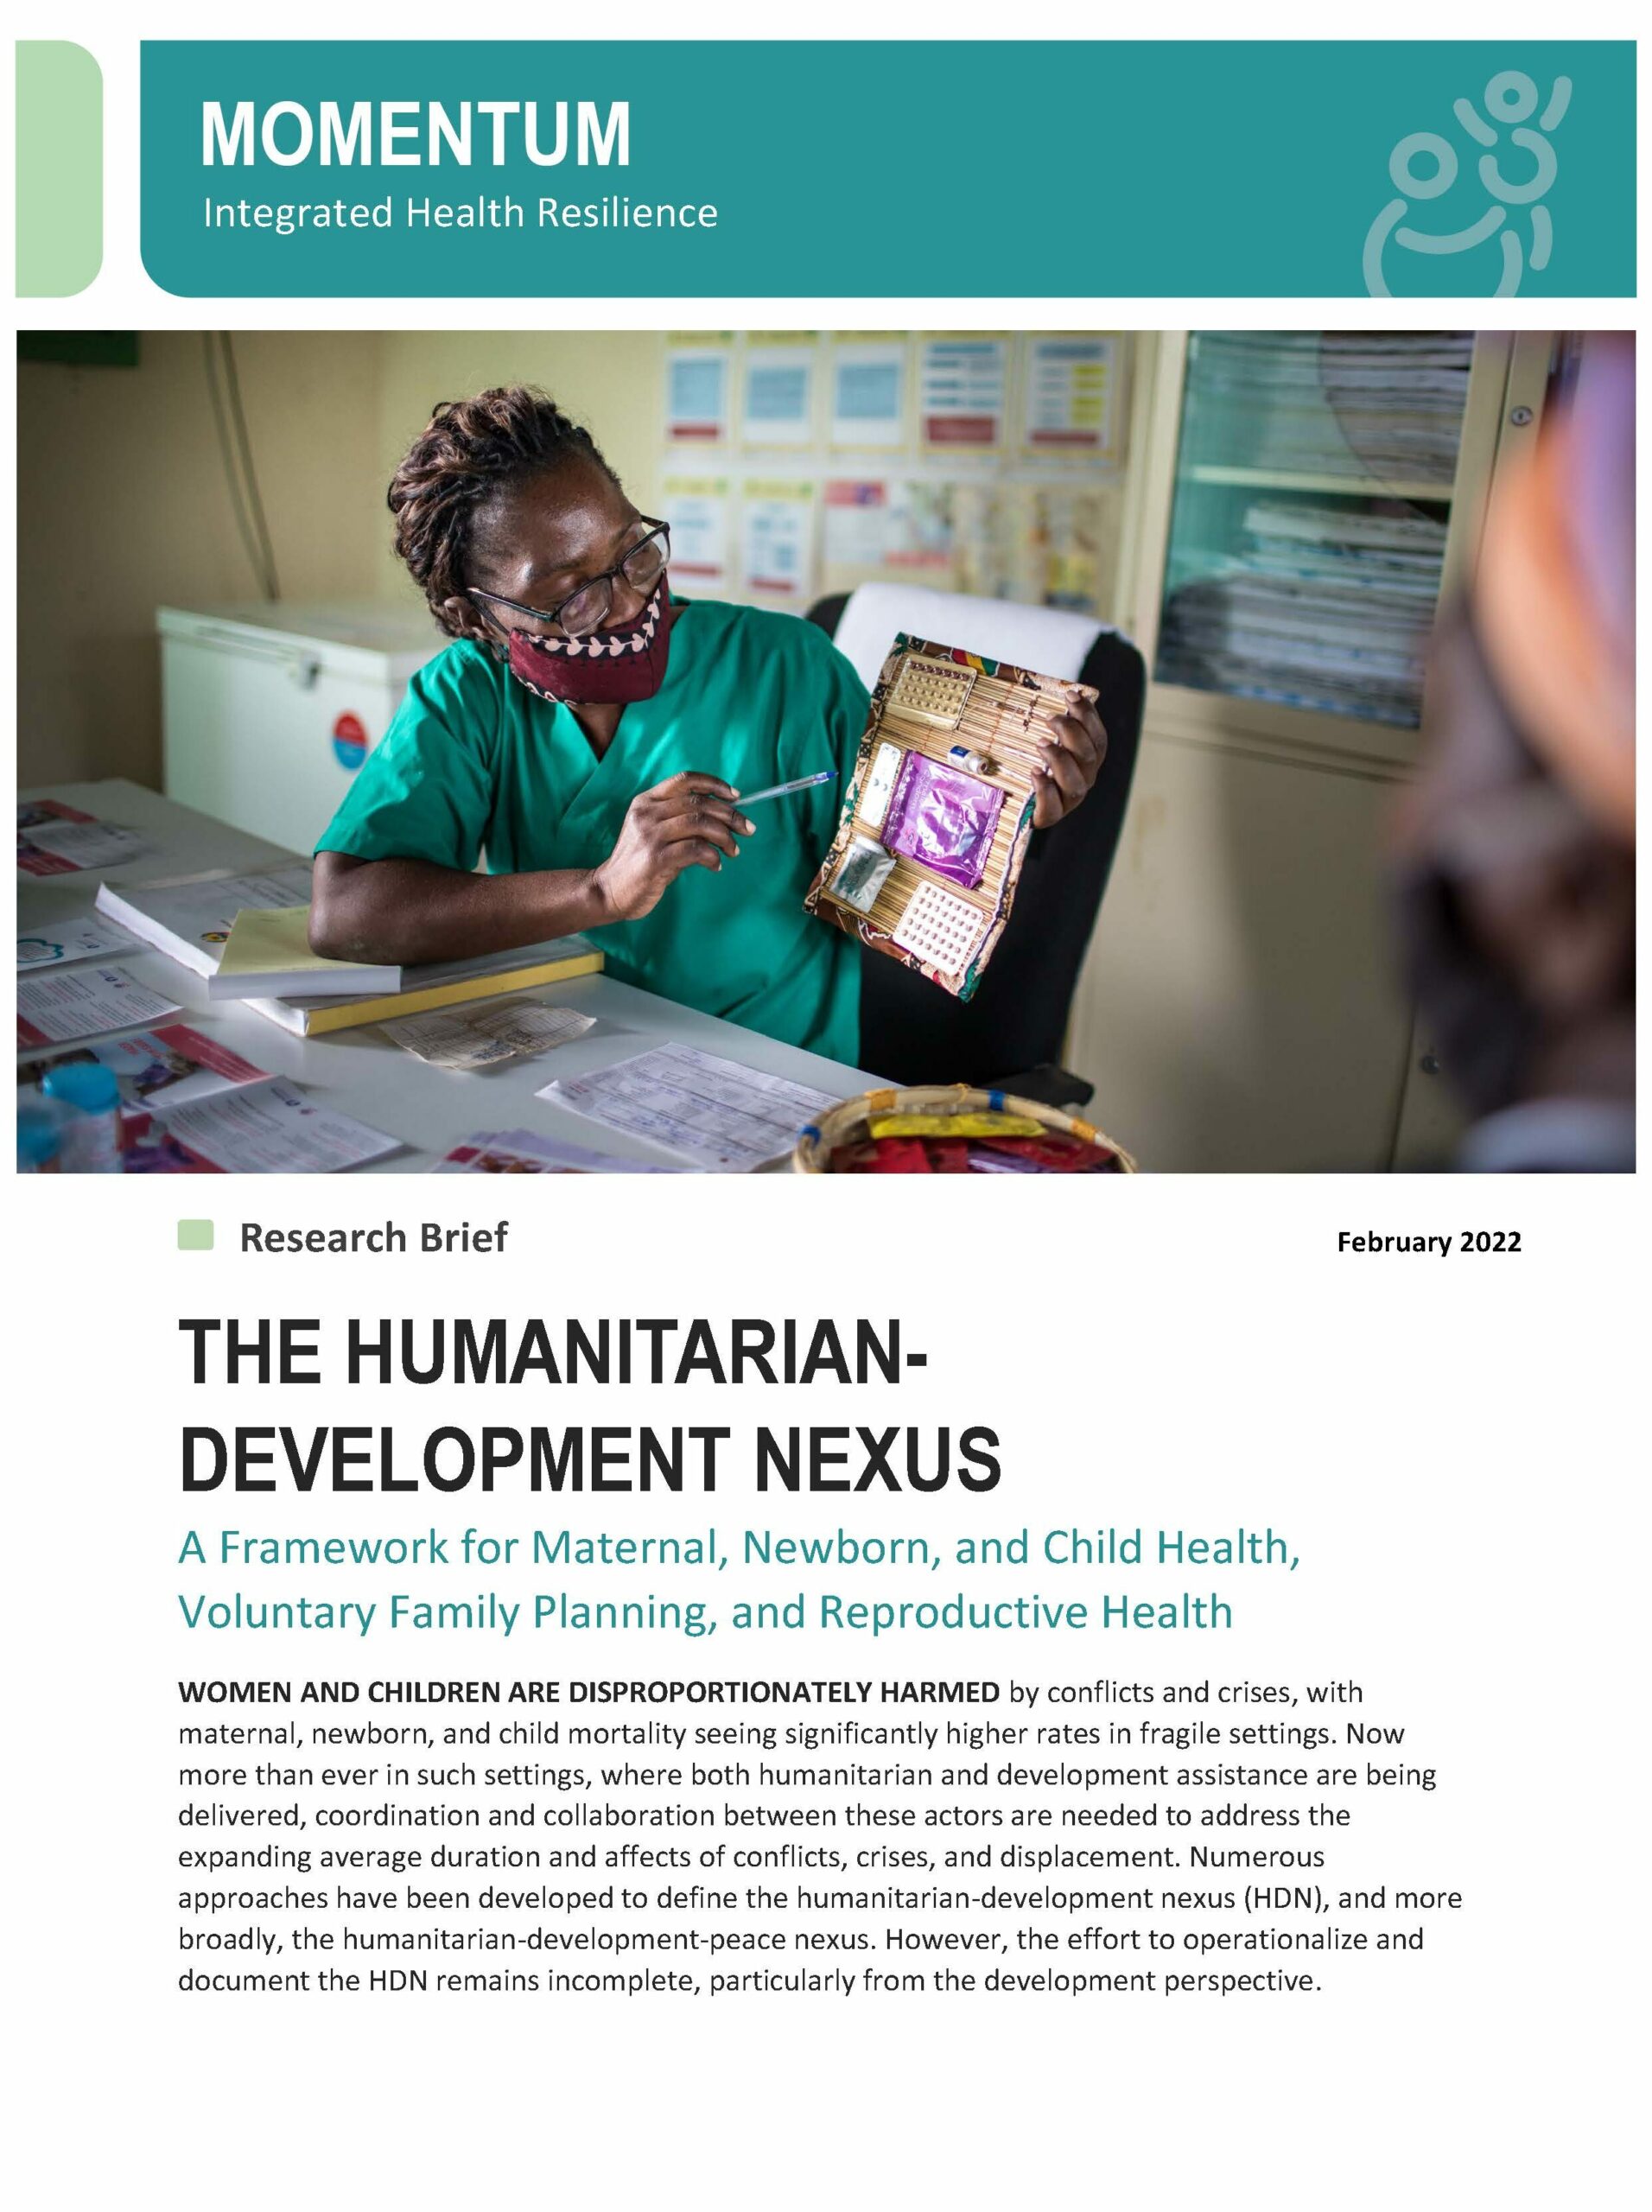 O Nexo Humanitário-Desenvolvimento: Um Quadro para a Saúde Materna